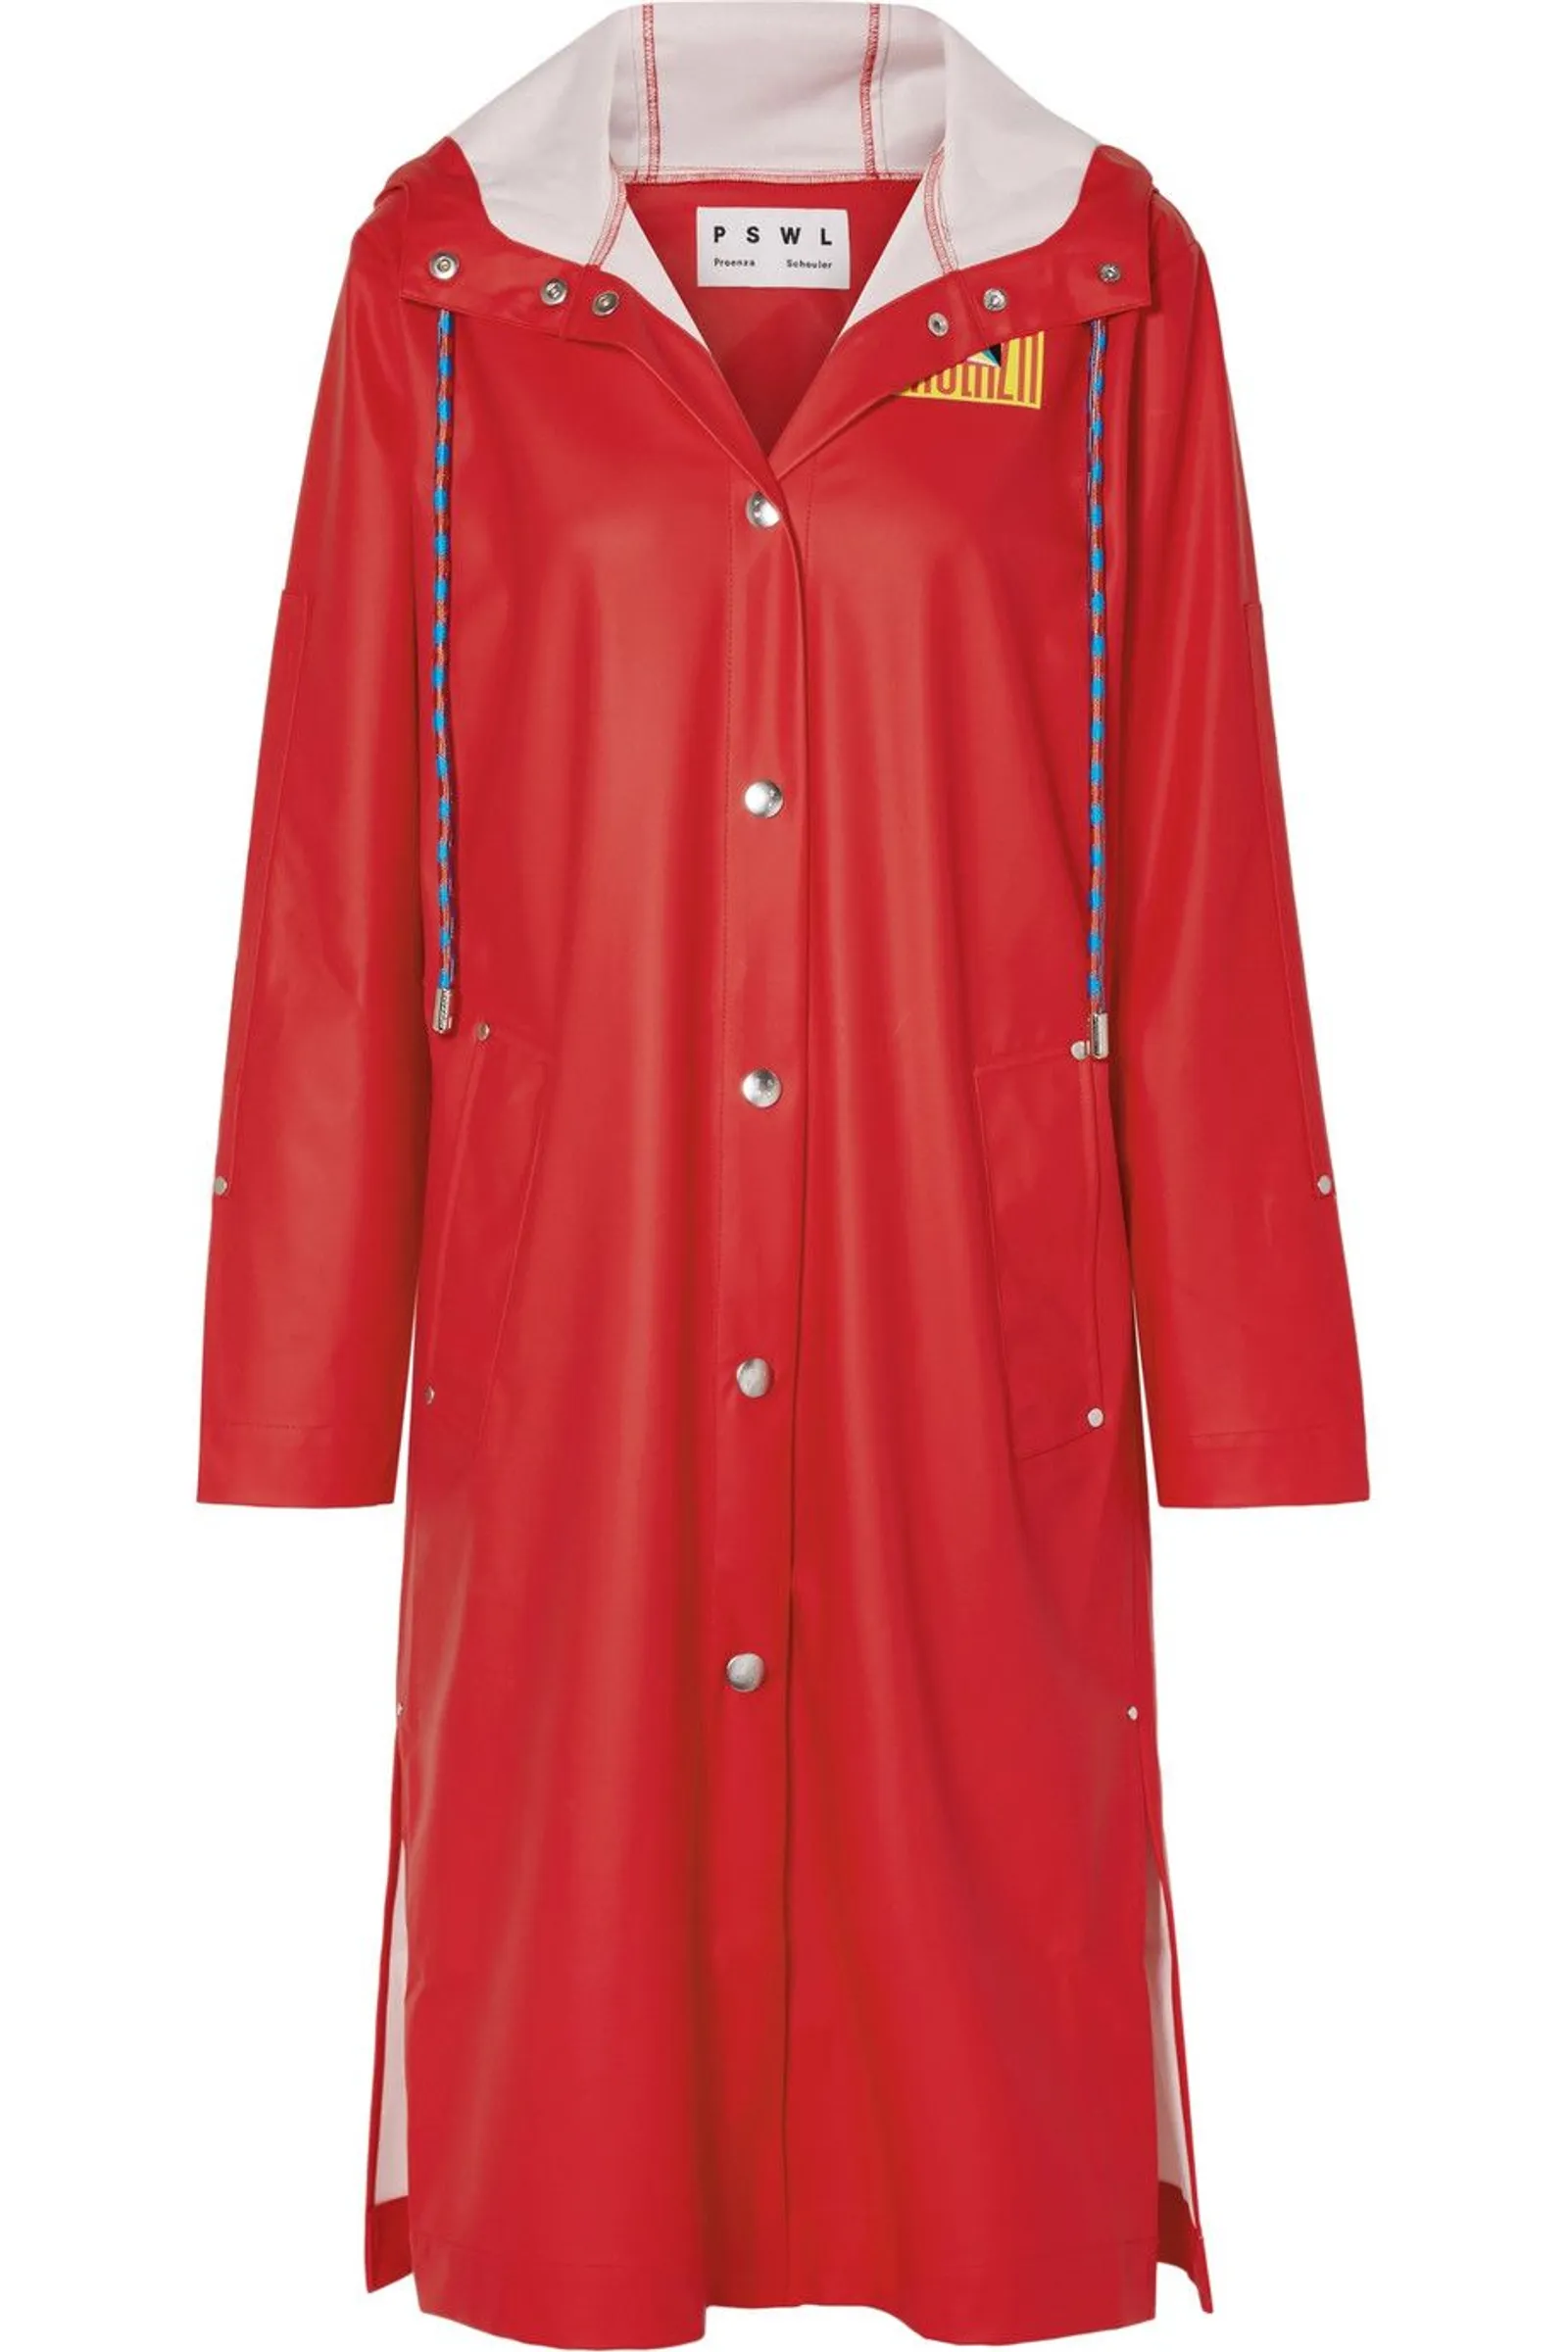 #PopbelaOOTD: Jaket Hujan yang Nyaman Tapi Tetap Fashionable